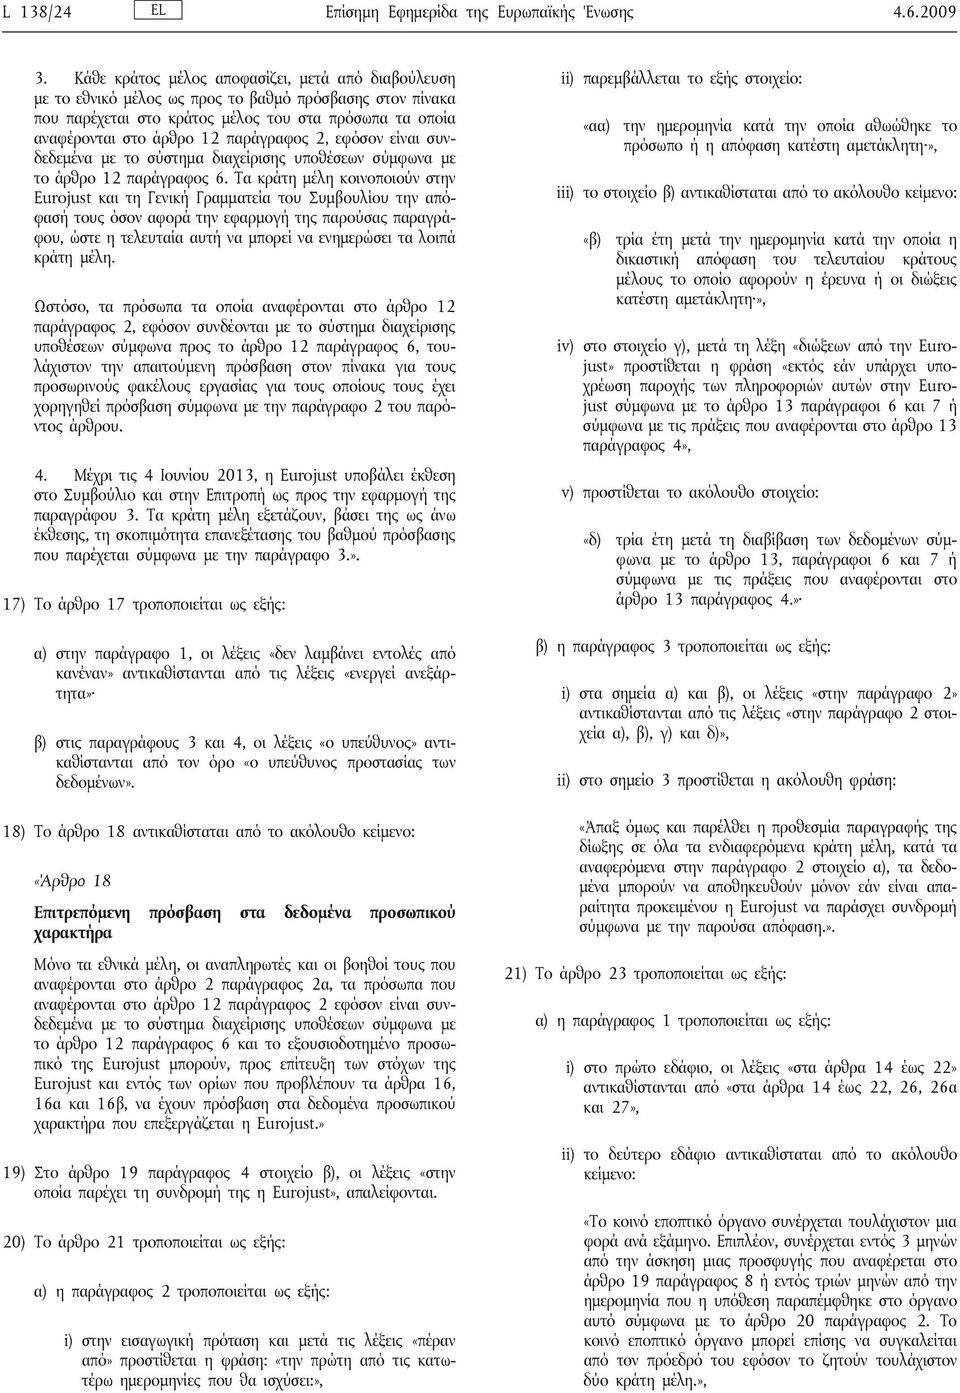 παράγραφος 2, εφόσον είναι συνδεδεμένα με το σύστημα διαχείρισης υποθέσεων σύμφωνα με το άρθρο 12 παράγραφος 6.